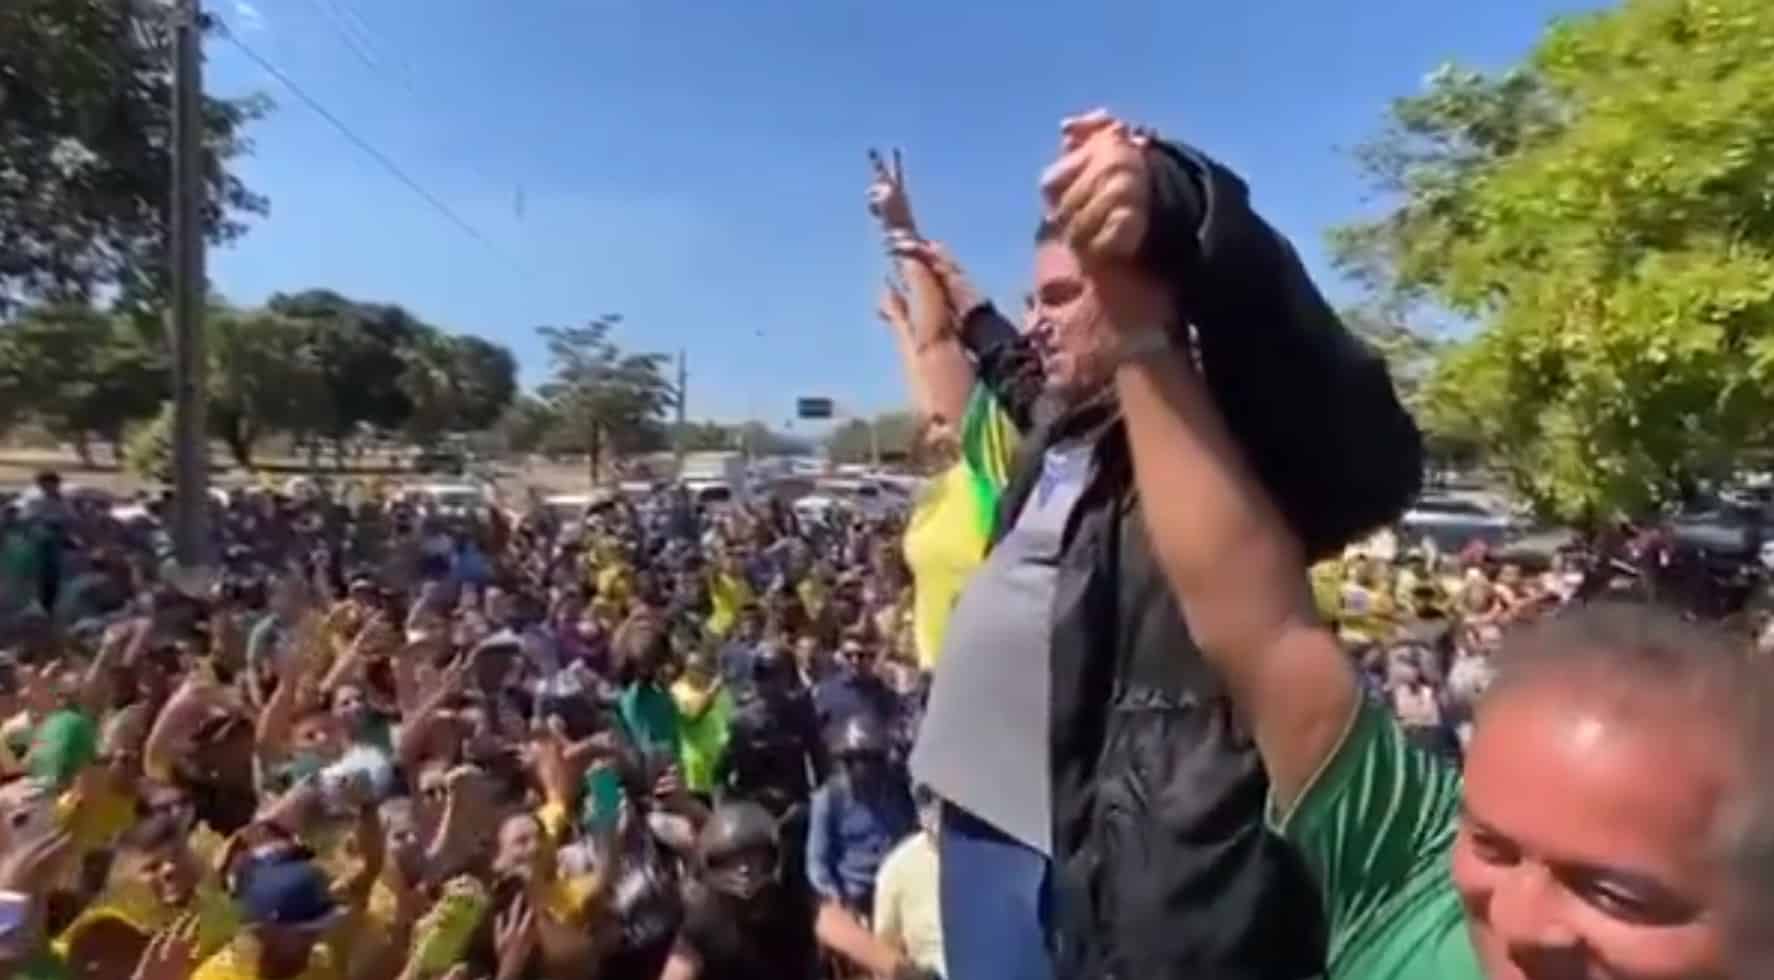 VÍDEO: durante carreata em sua homenagem, população grita "Volta Bolsonaro!" na Praça dos Girassóis em Palmas; VEJA